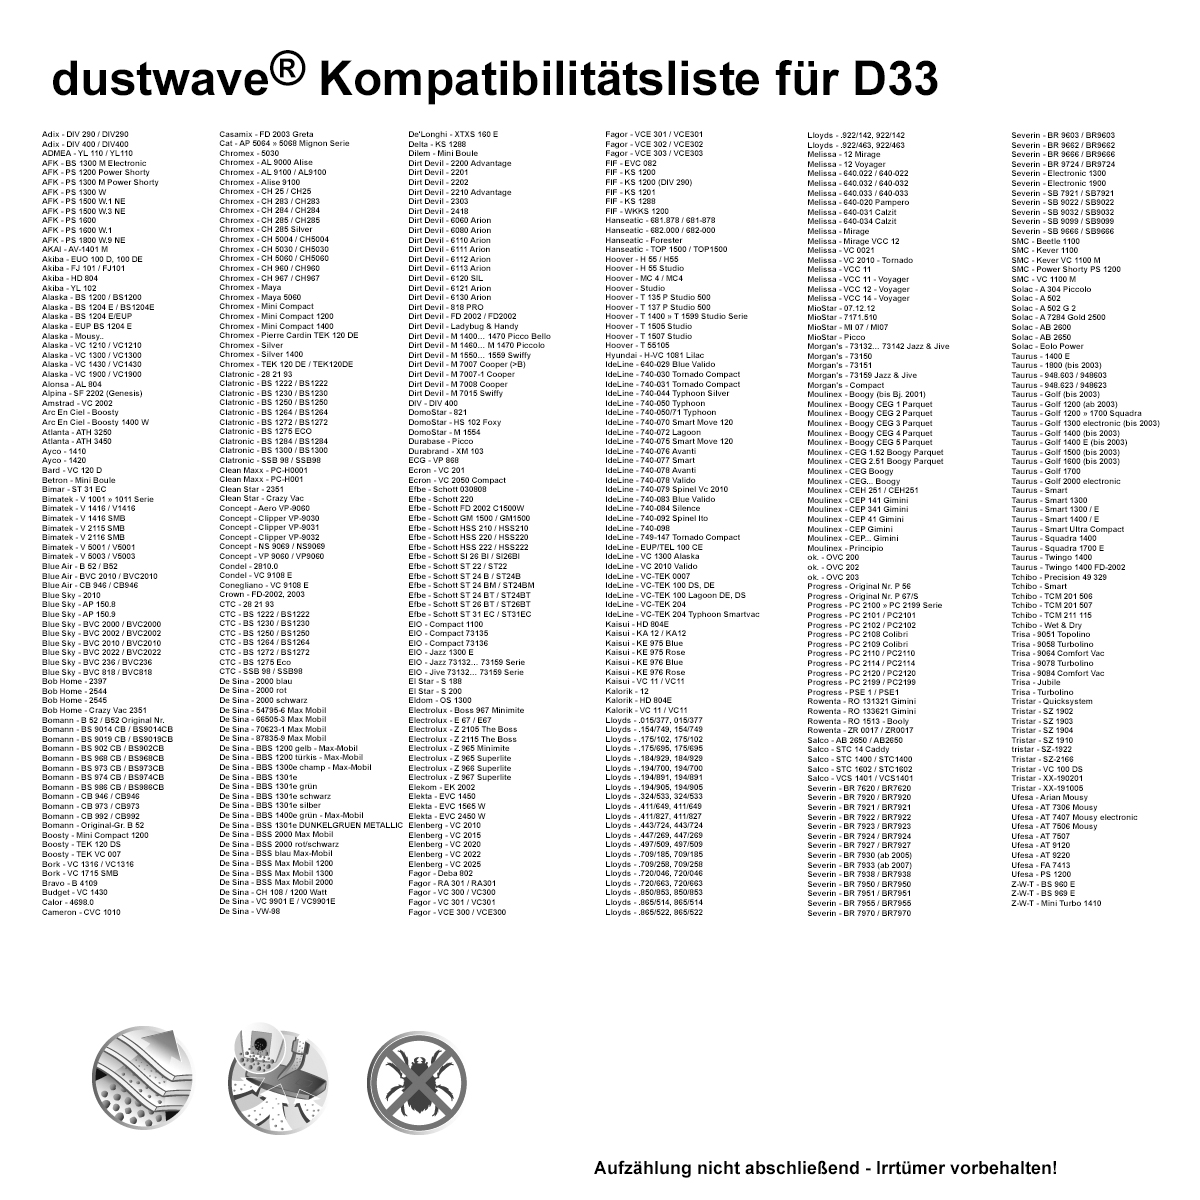 Dustwave® 10 Staubsaugerbeutel für Akiba YL 102 - hocheffizient mit Hygieneverschluss - Made in Germany